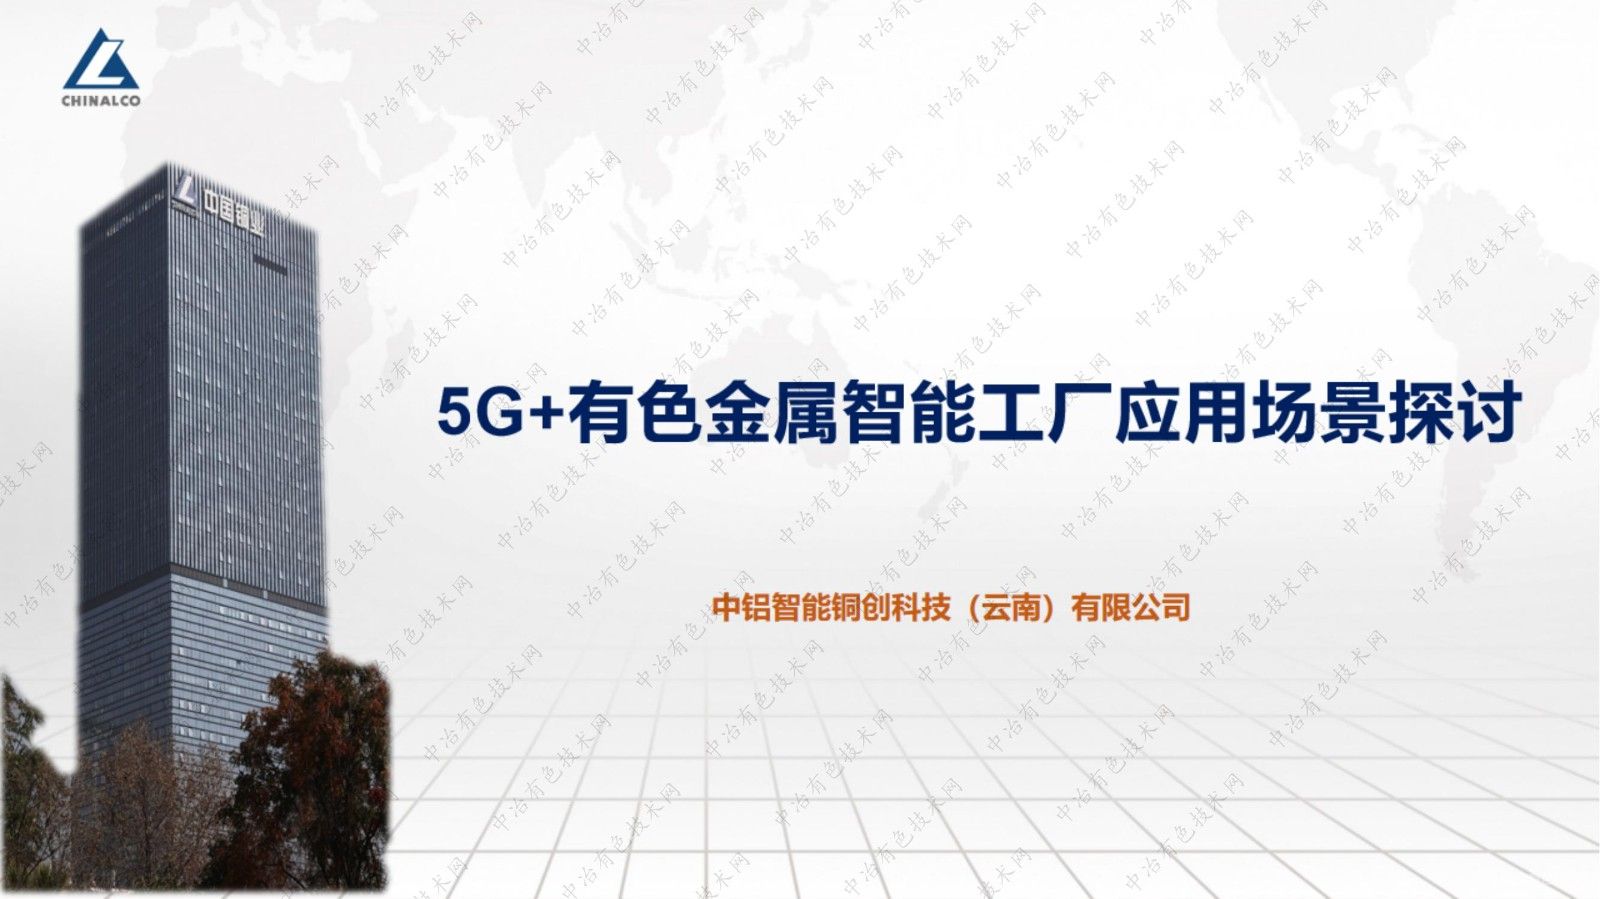 5G+有色金属智能工厂应用场景探讨